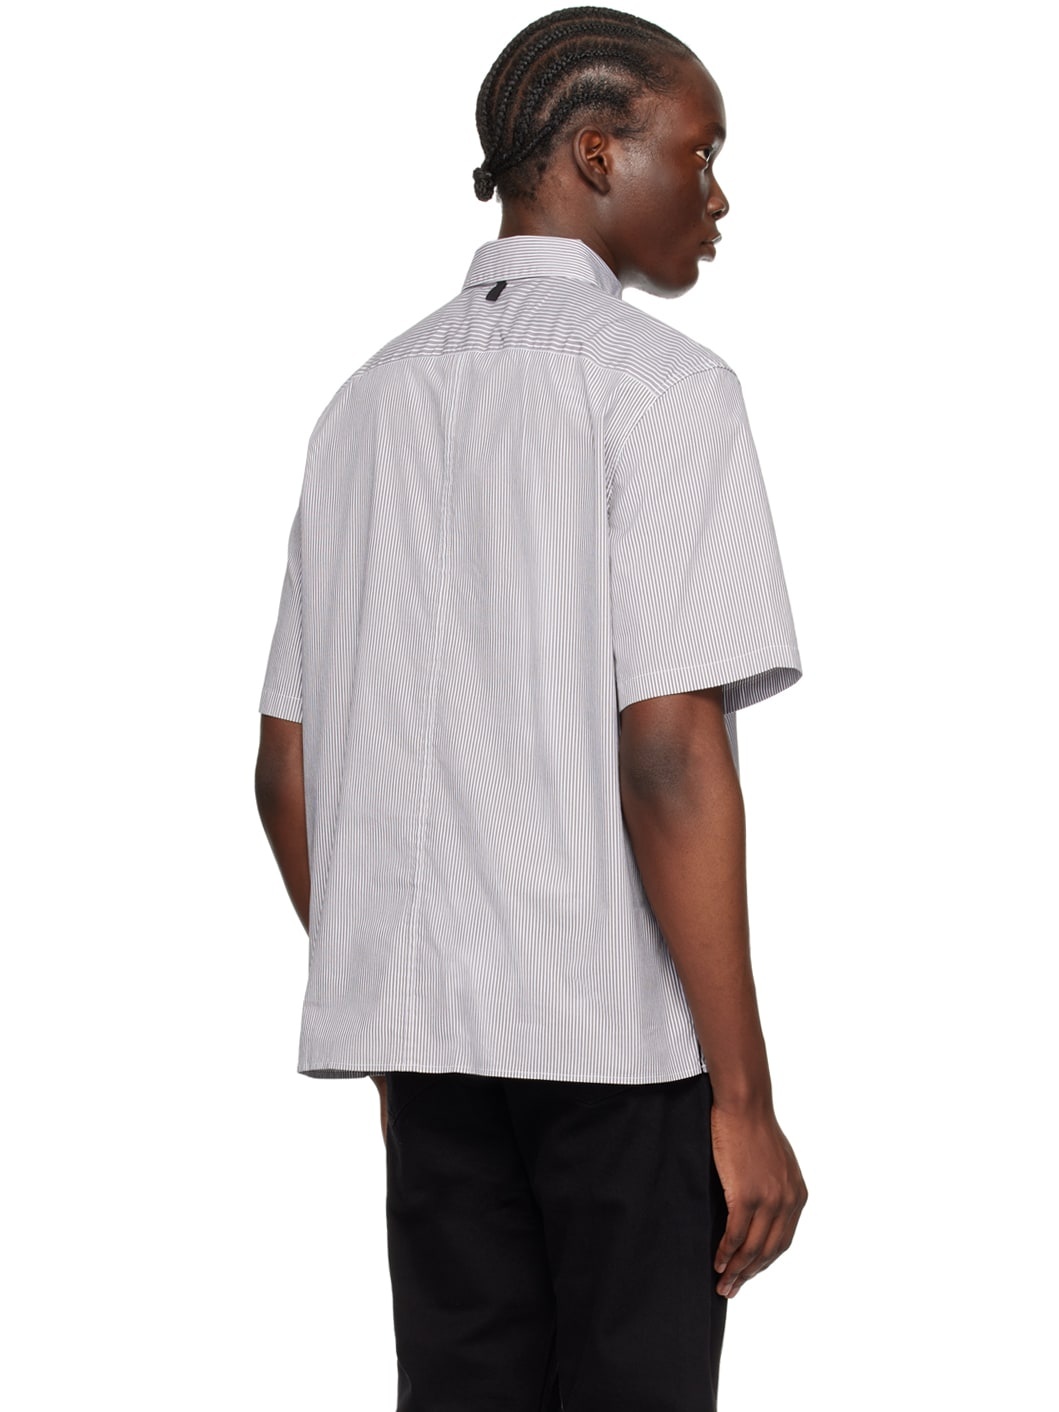 Gray & White Dalton Shirt - 3